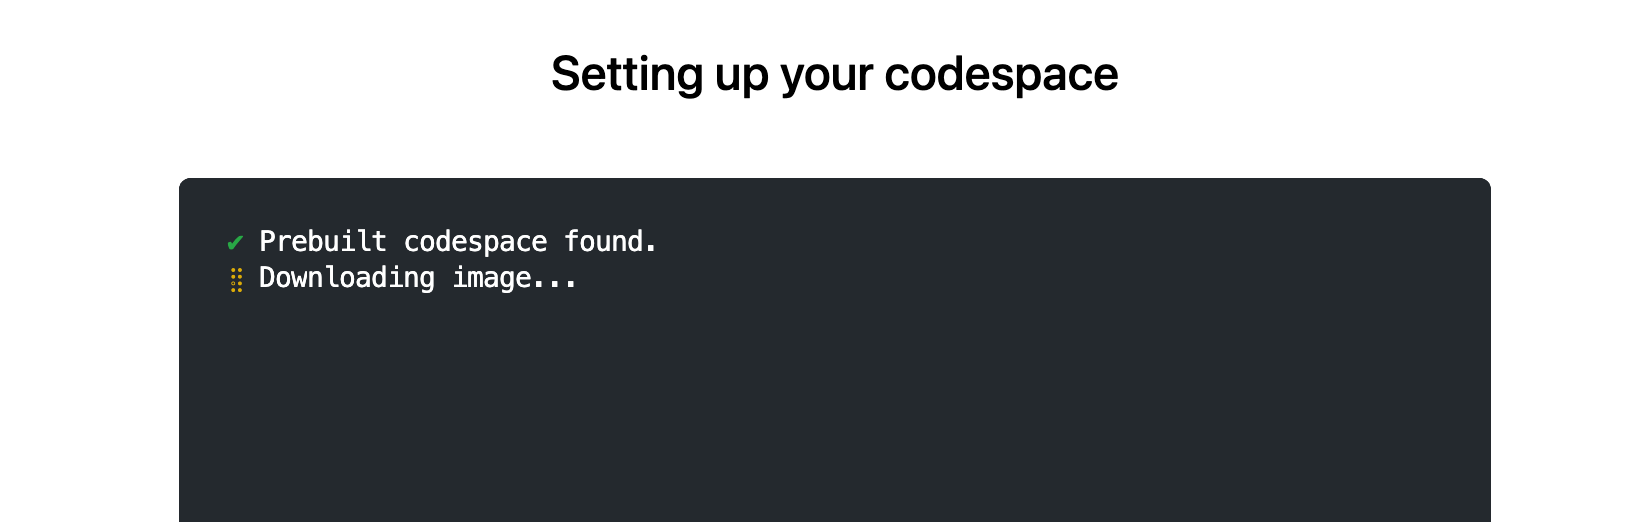 Message « Codespace prédéfini trouvé »